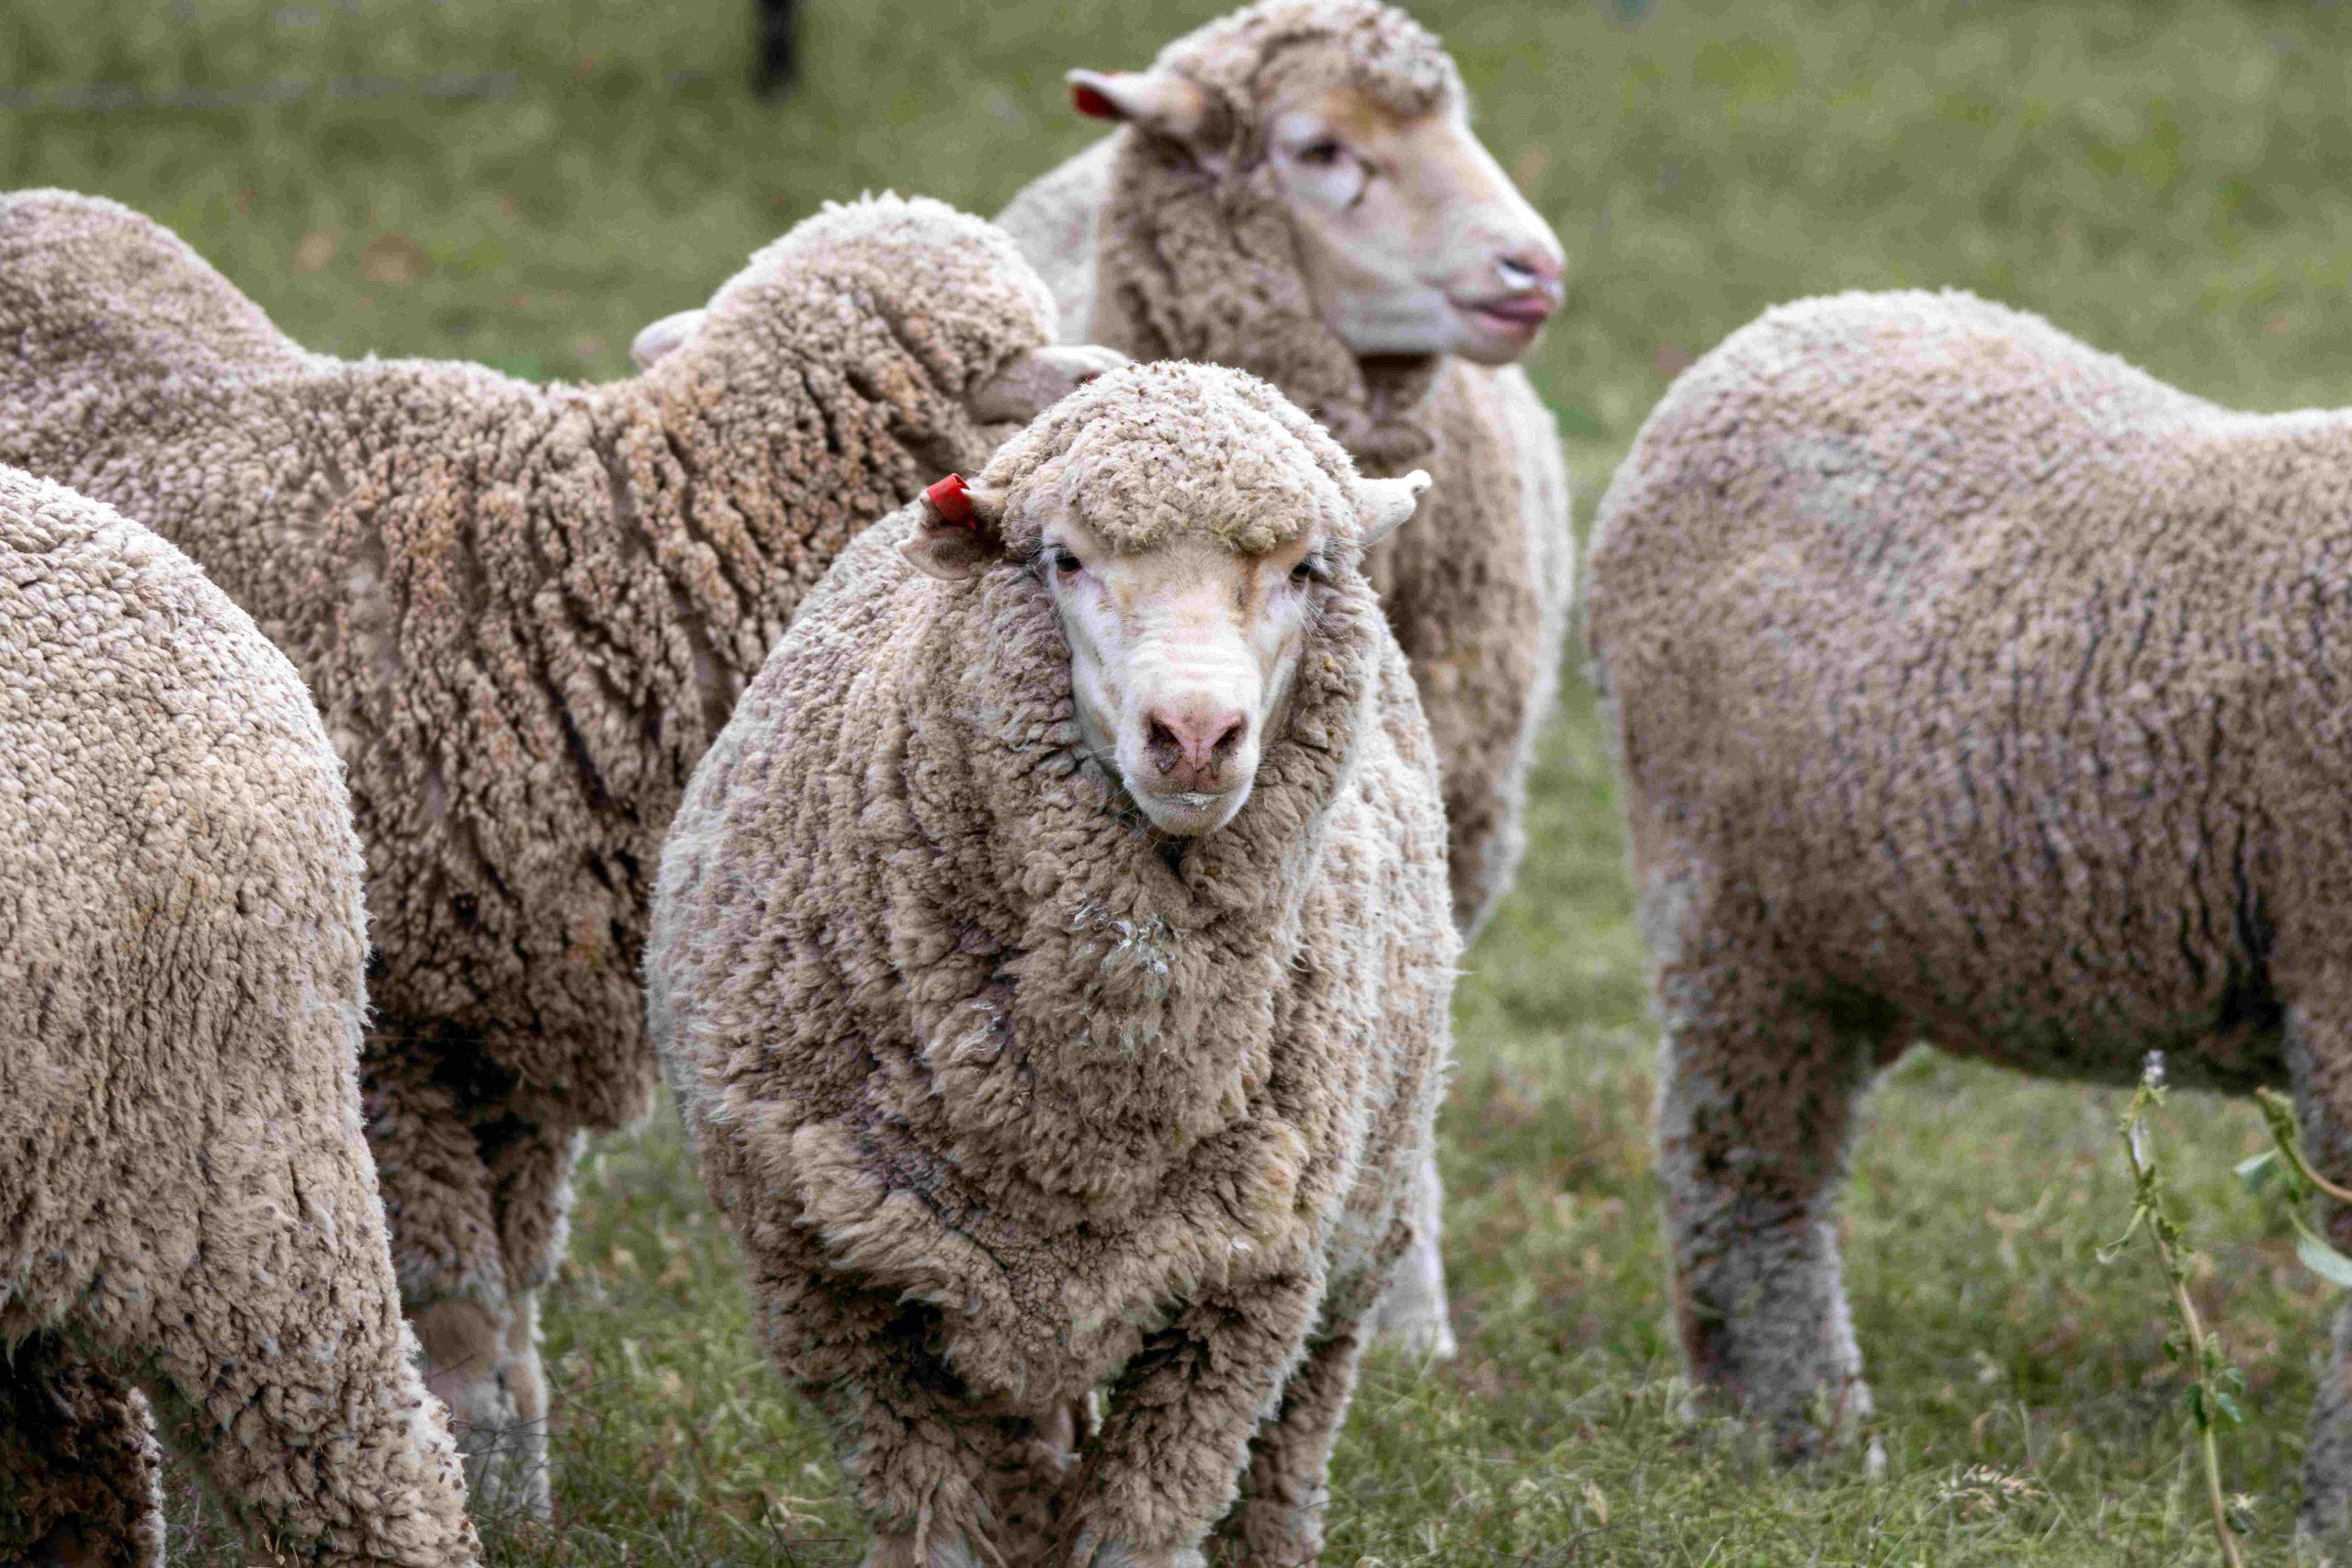 Merino sheep for wool production at Wallabadah